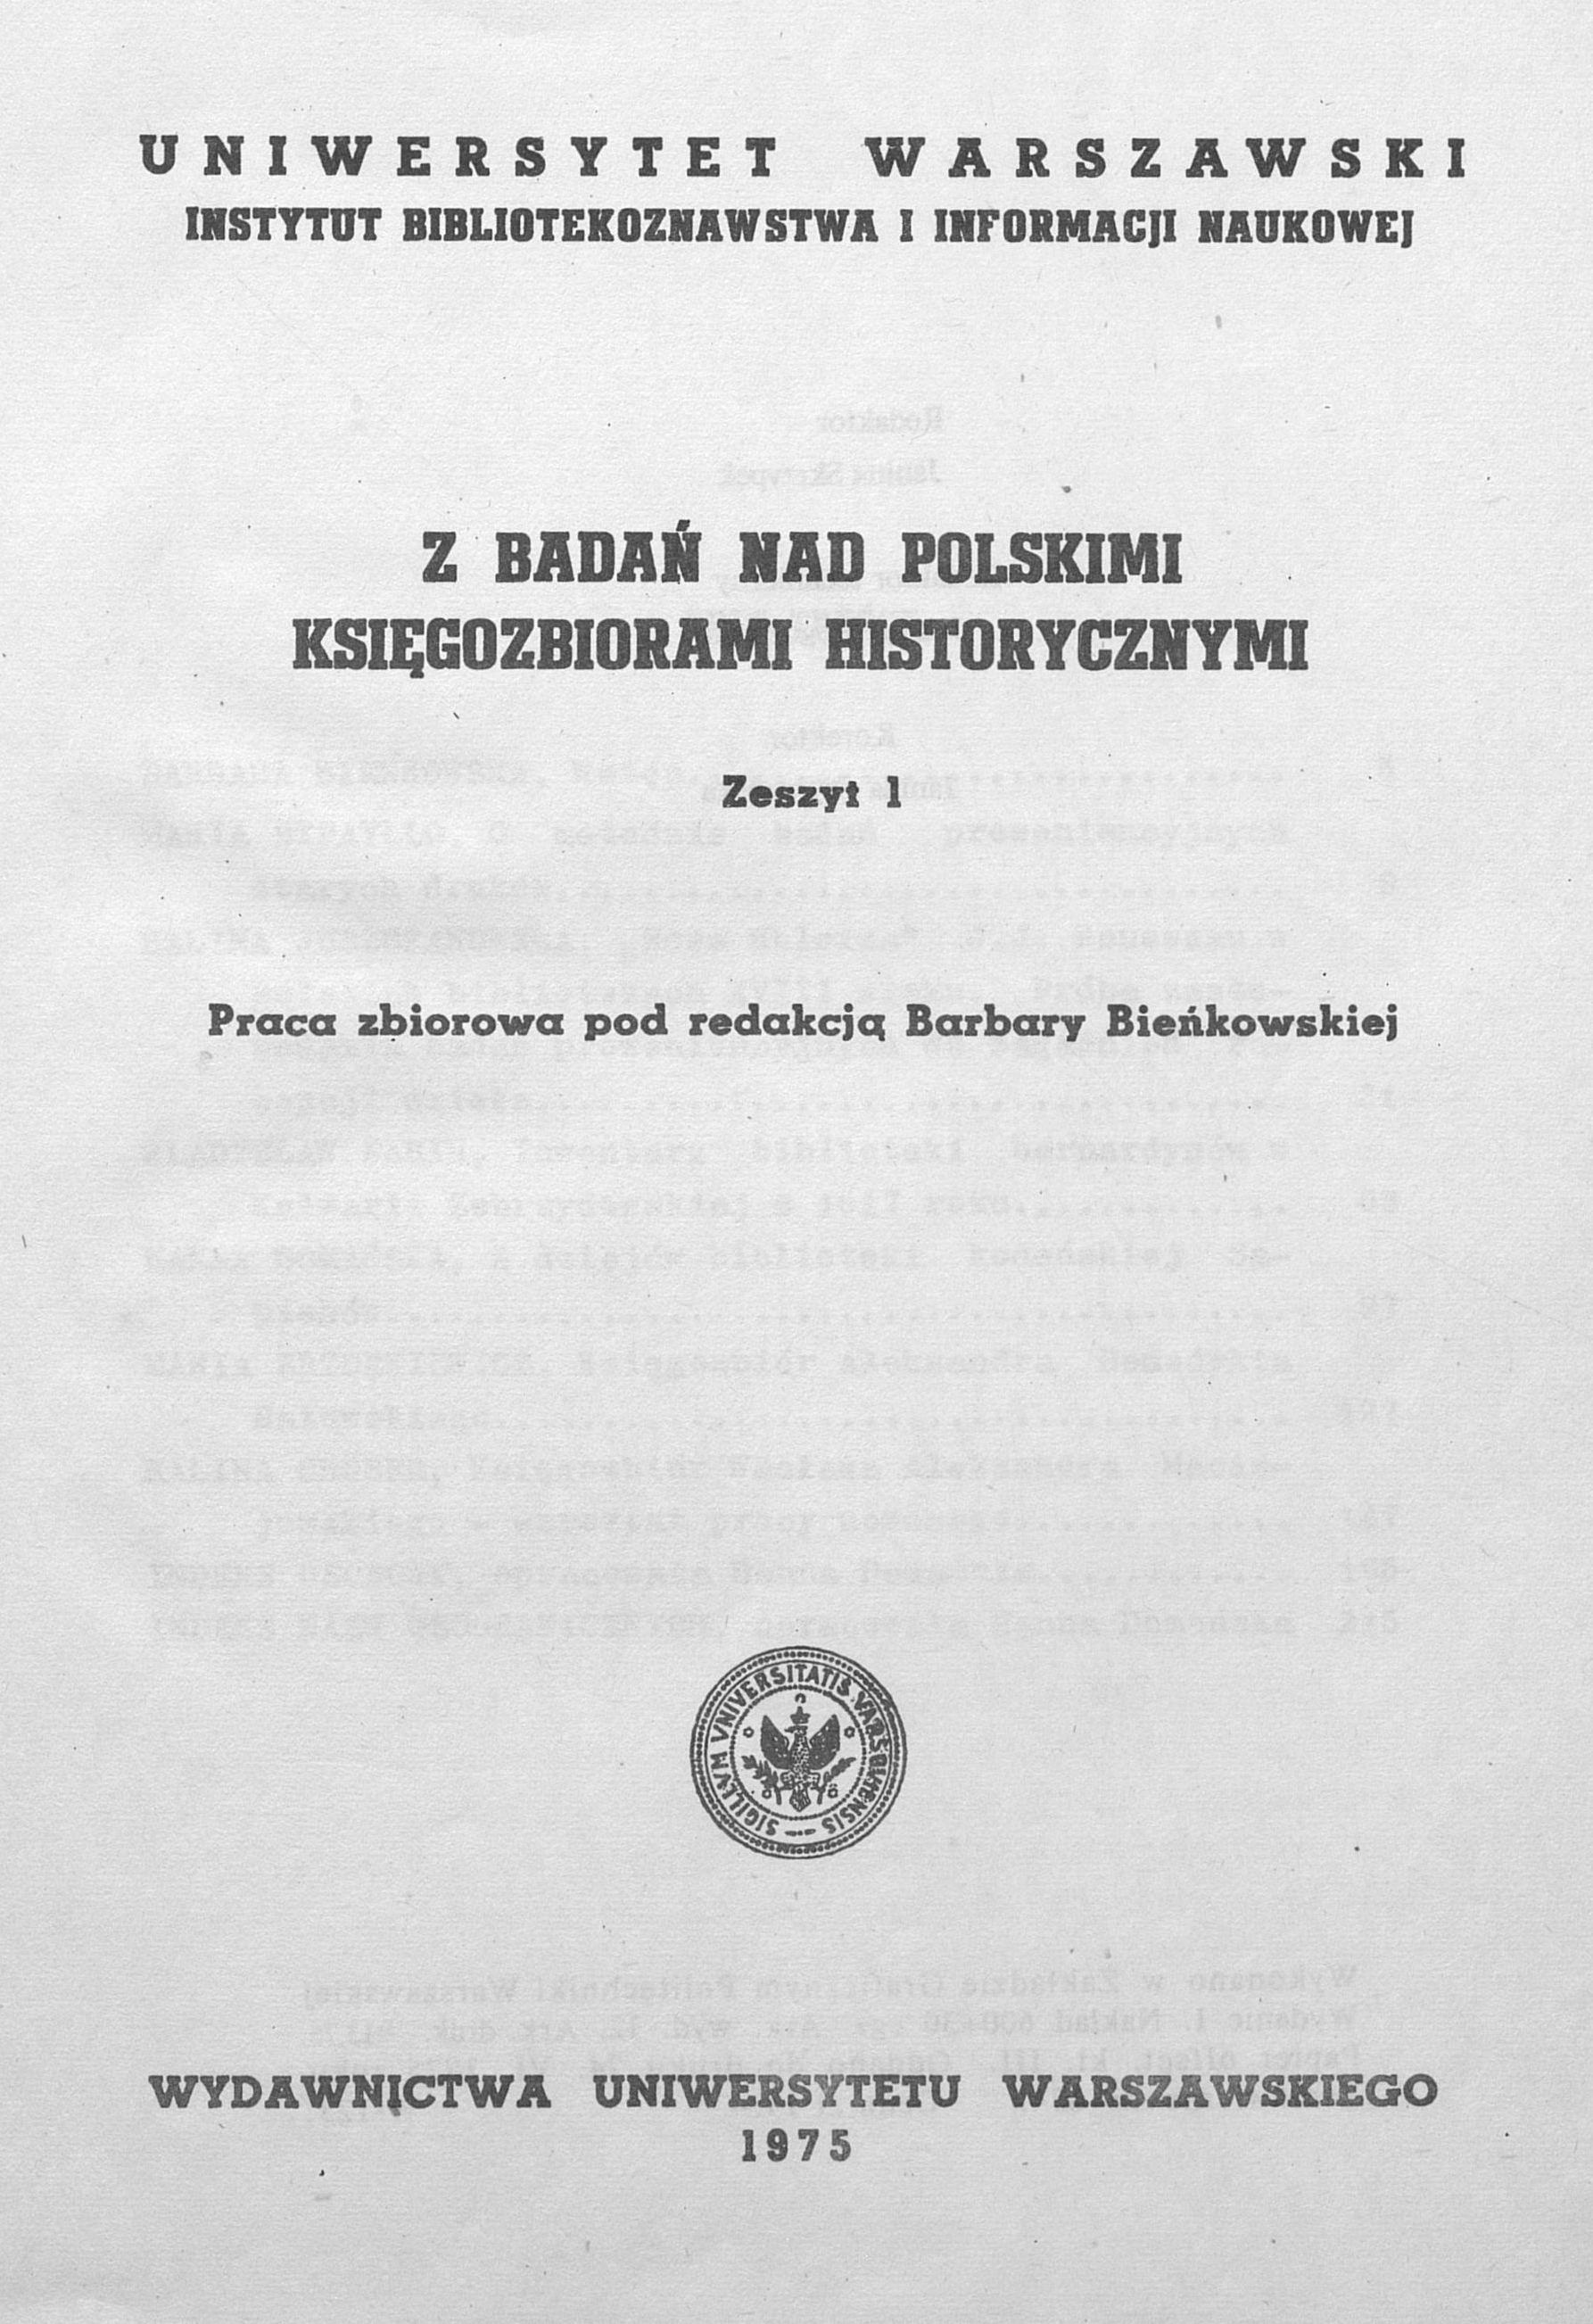 					Pokaż  1975: Z Badań nad Polskimi Księgozbiorami Historycznymi - Zeszyt 1
				